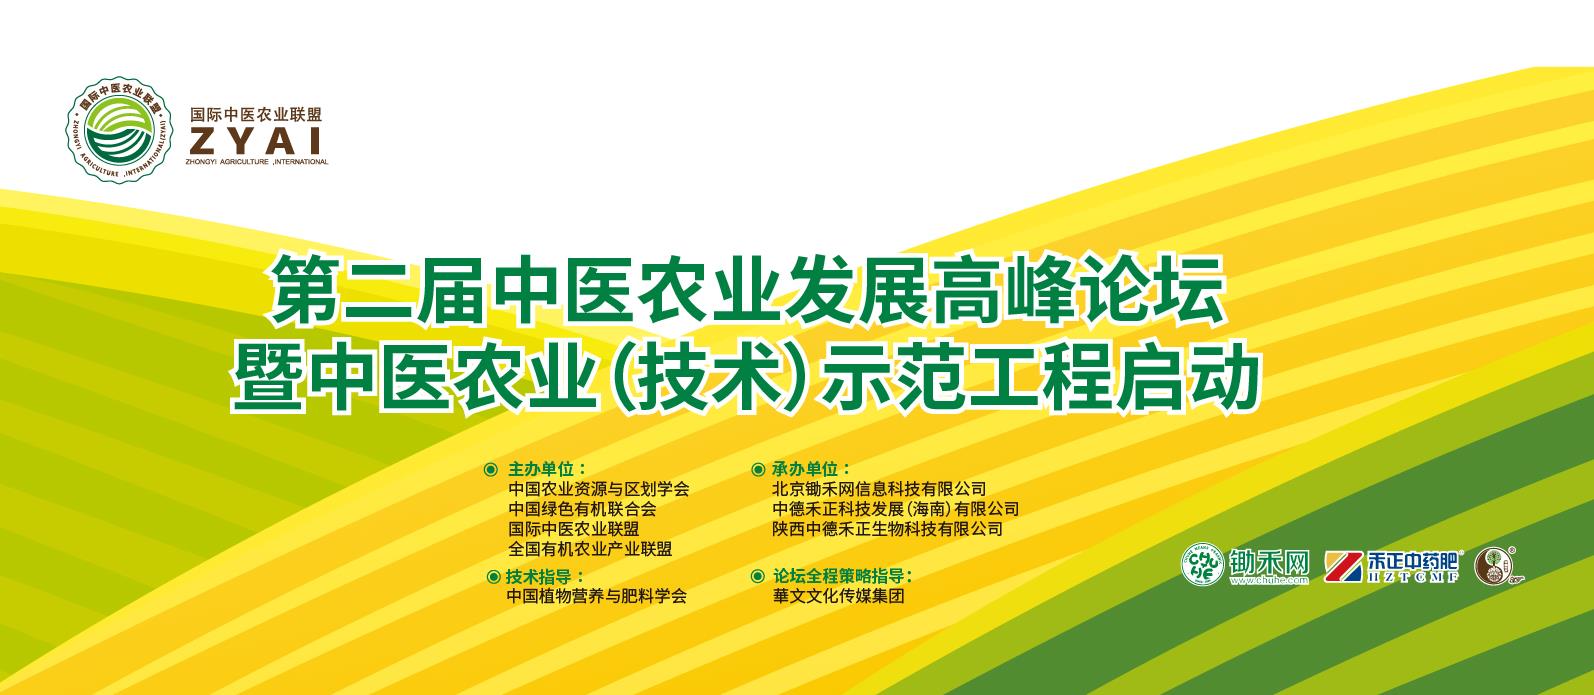 第二届中医农业发展高峰论坛